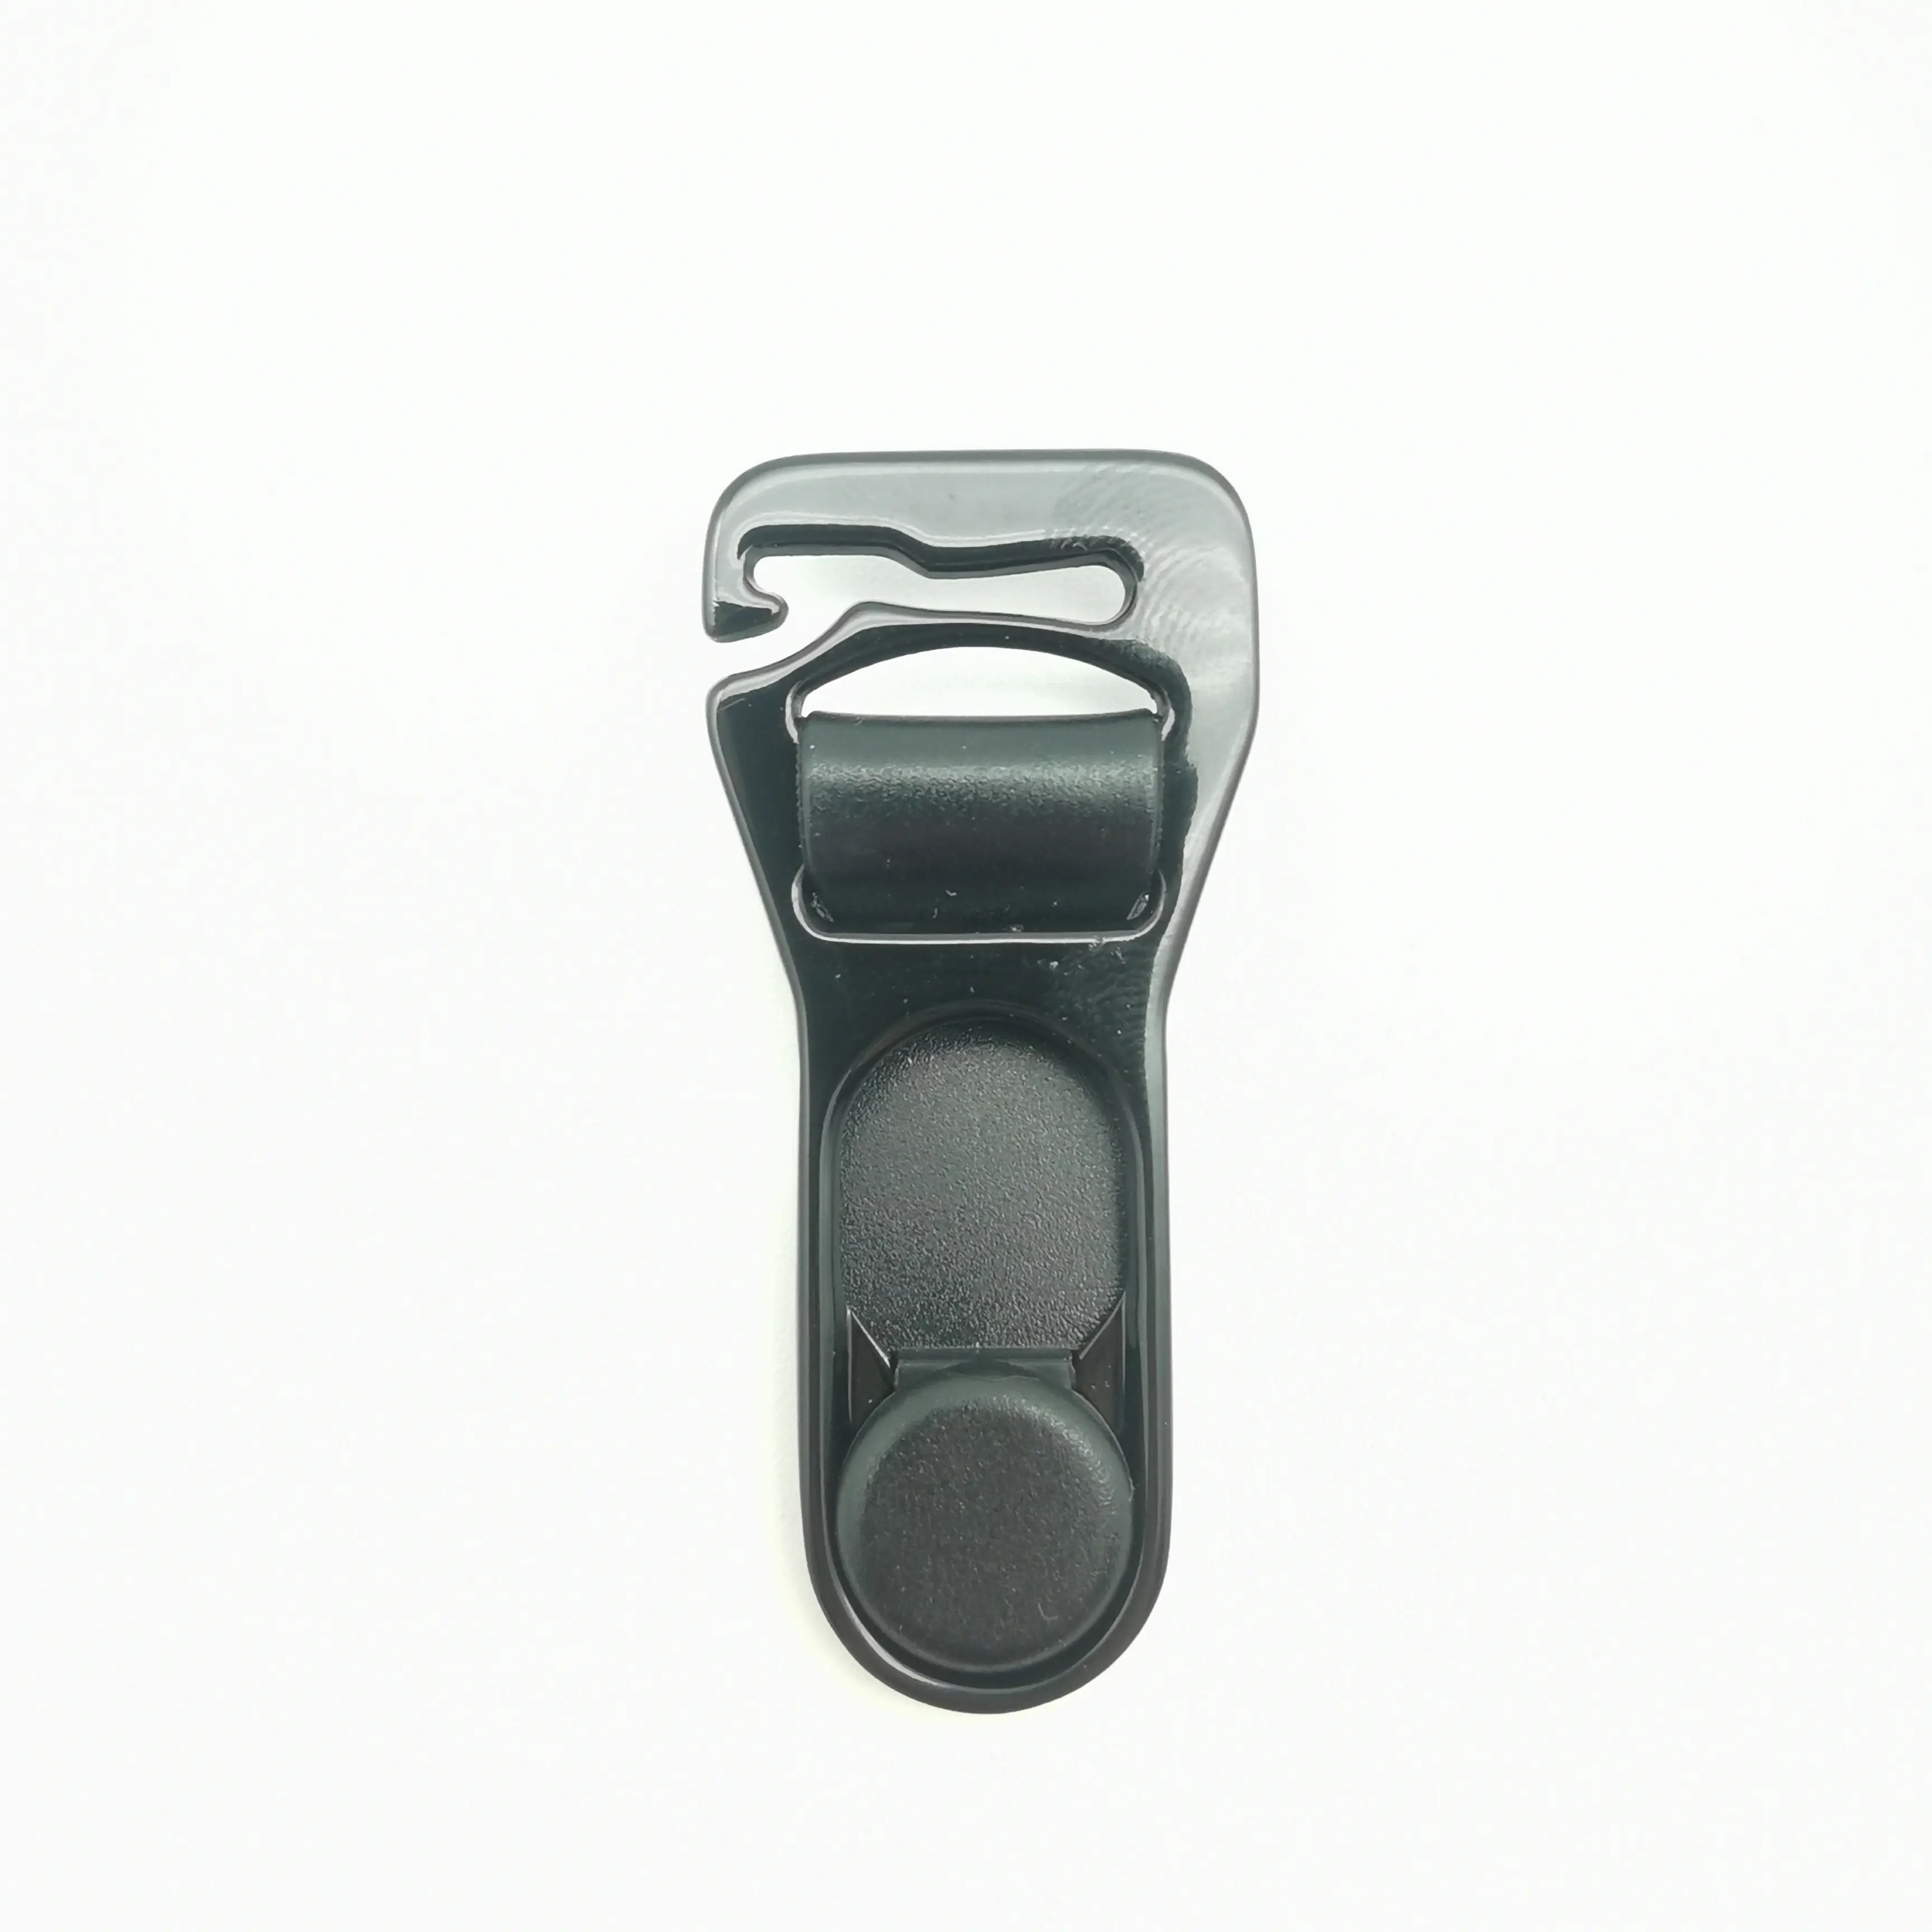 Benutzer definierte Farbe sexy 12mm Zink legierung Hosenträger Still-BH-Clips Strumpfband Gürtel clip